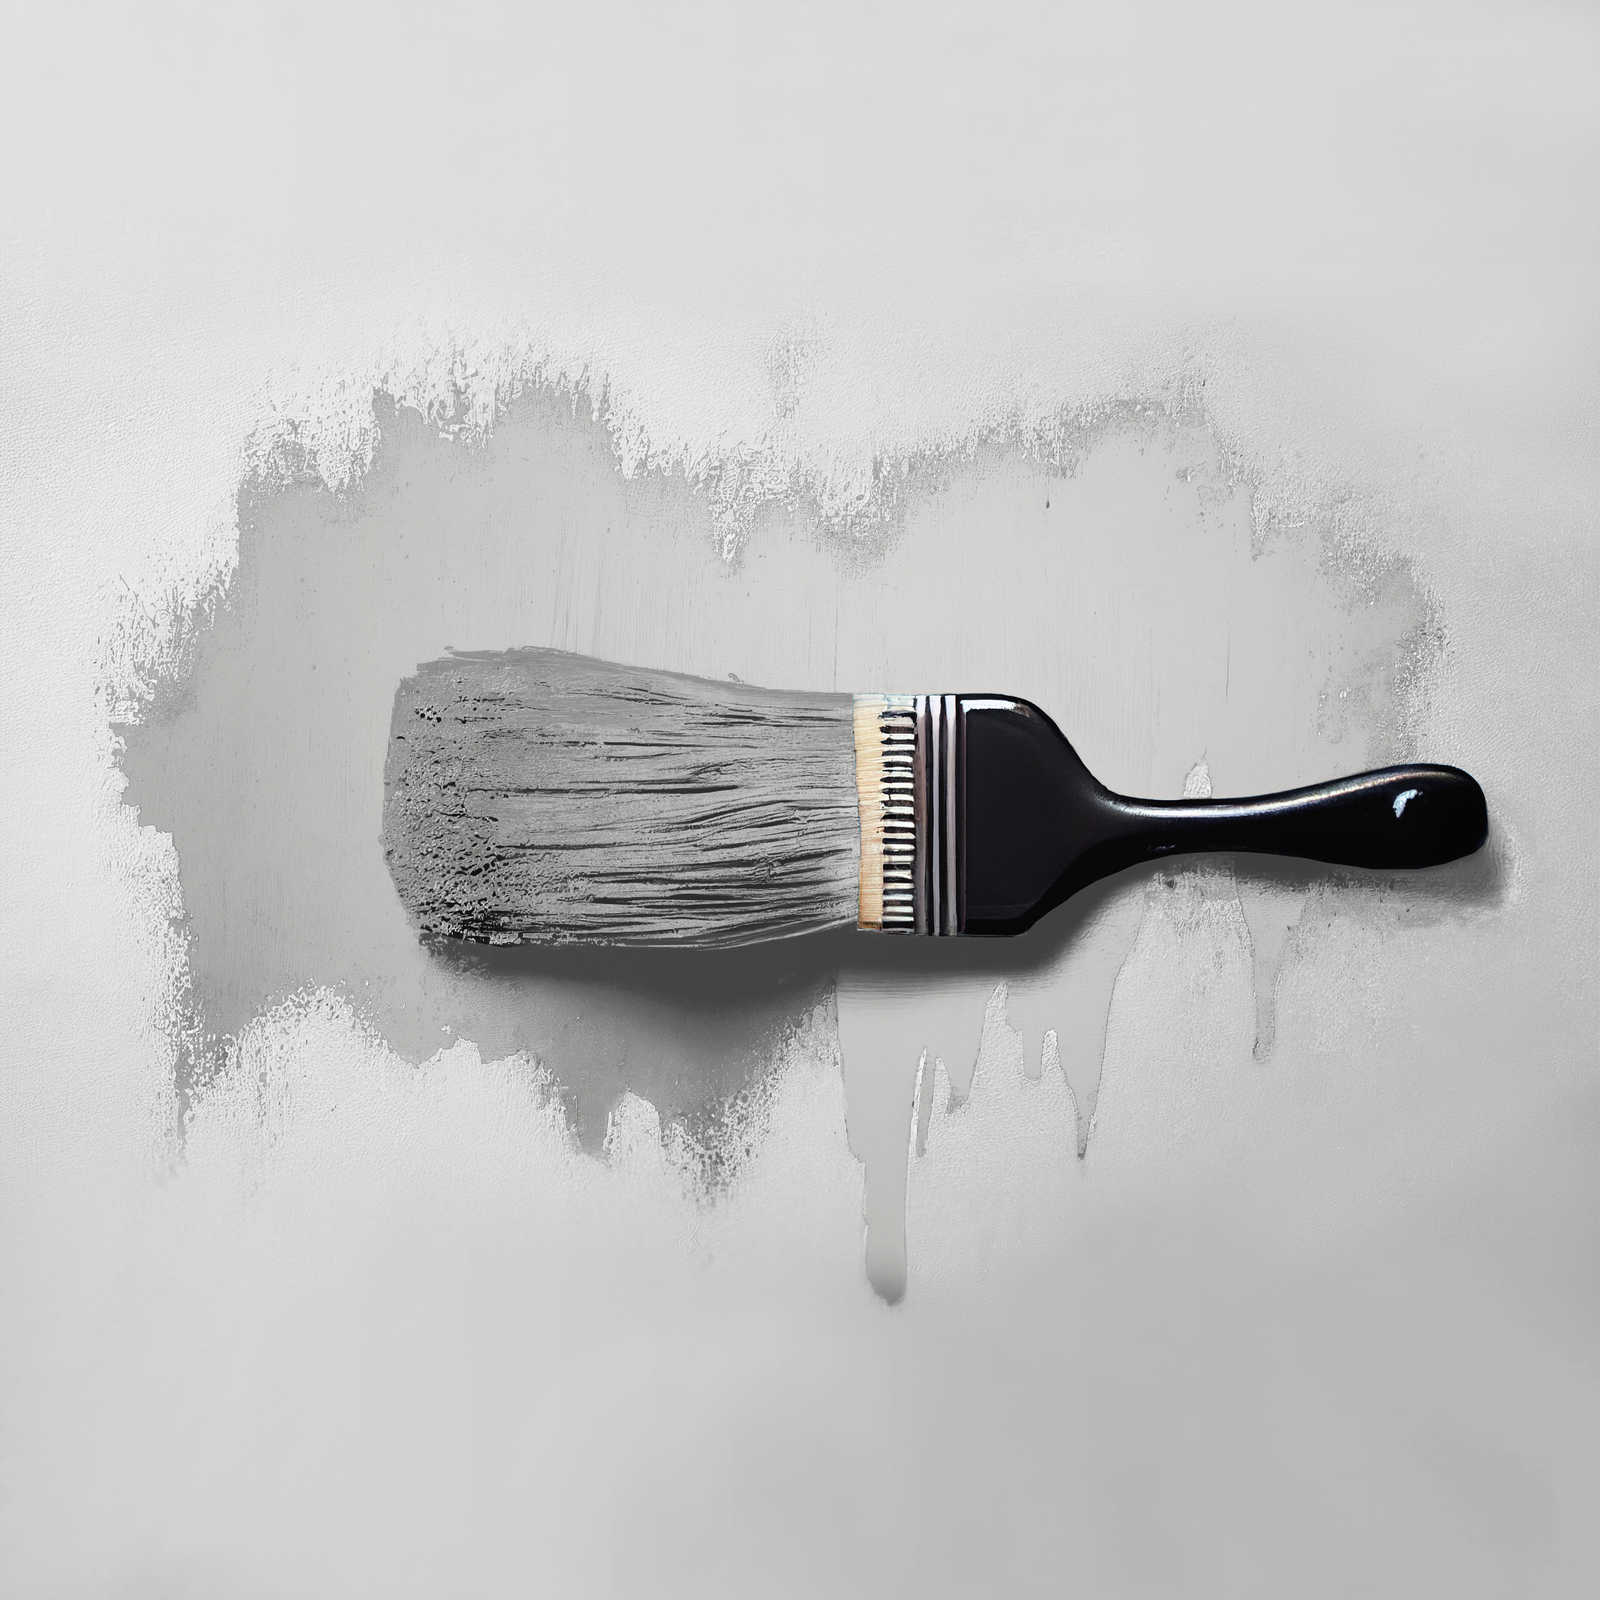             Pittura murale TCK1009 »Sprat Fish« in grigio argento liscio – 5,0 litri
        